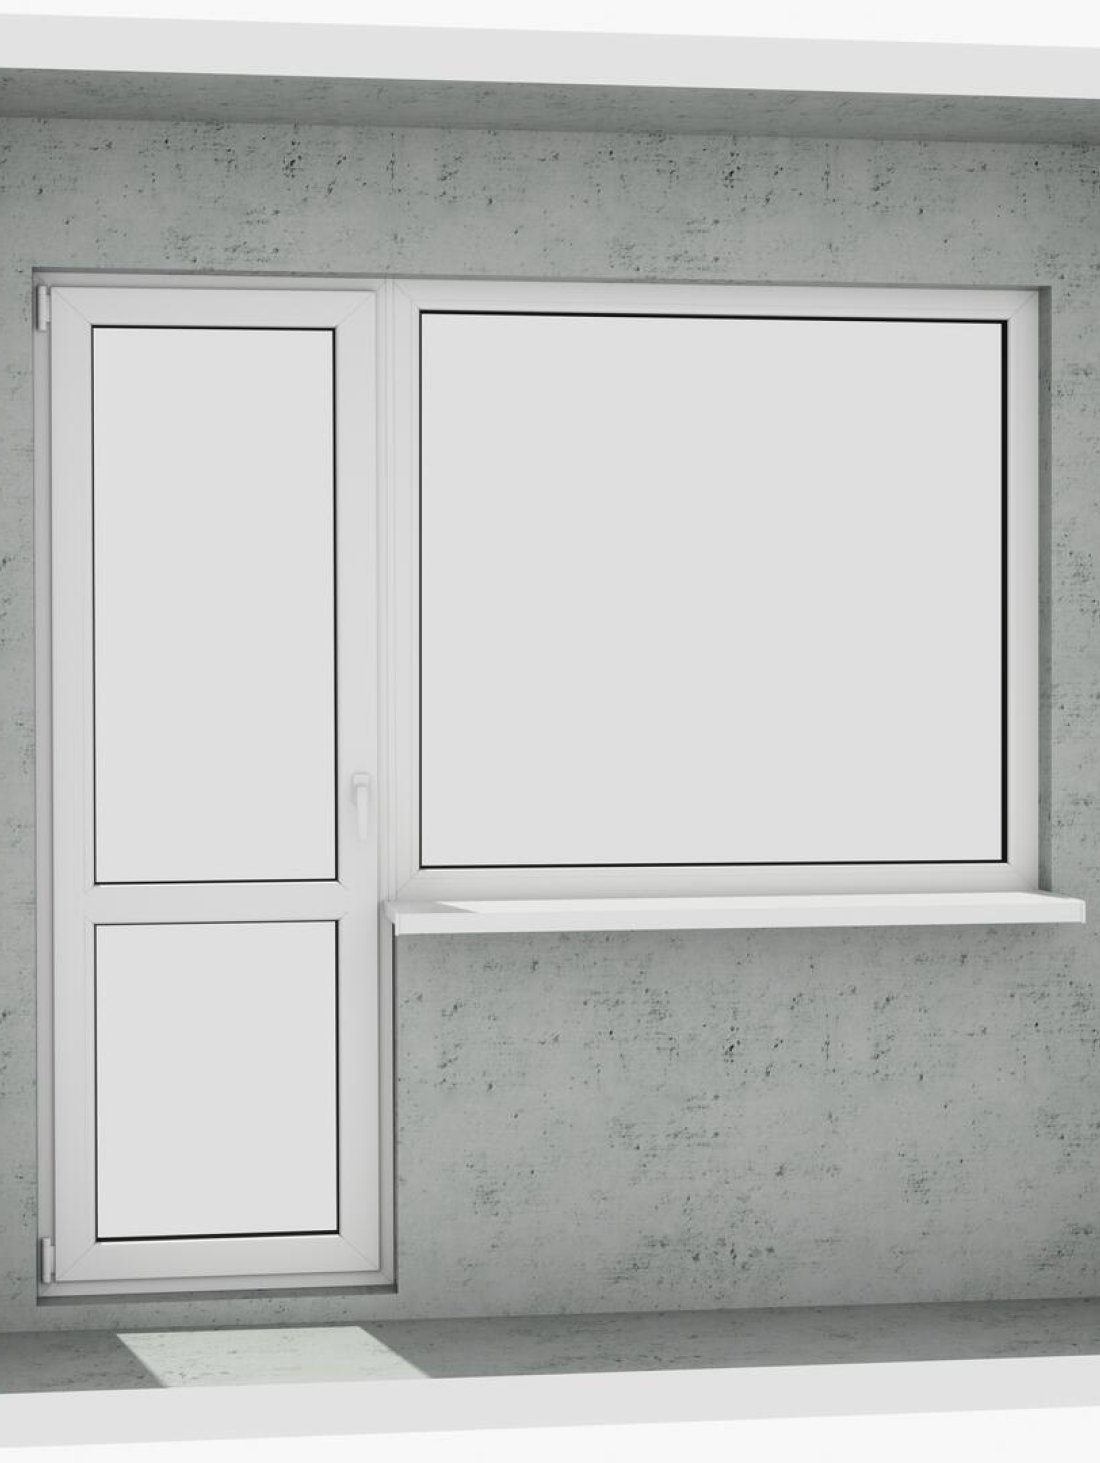 Выход на лоджию (балкон): классический белый металлопластиковый балконный блок (в двери есть режим проветривания, окно не открывается) - Паритет